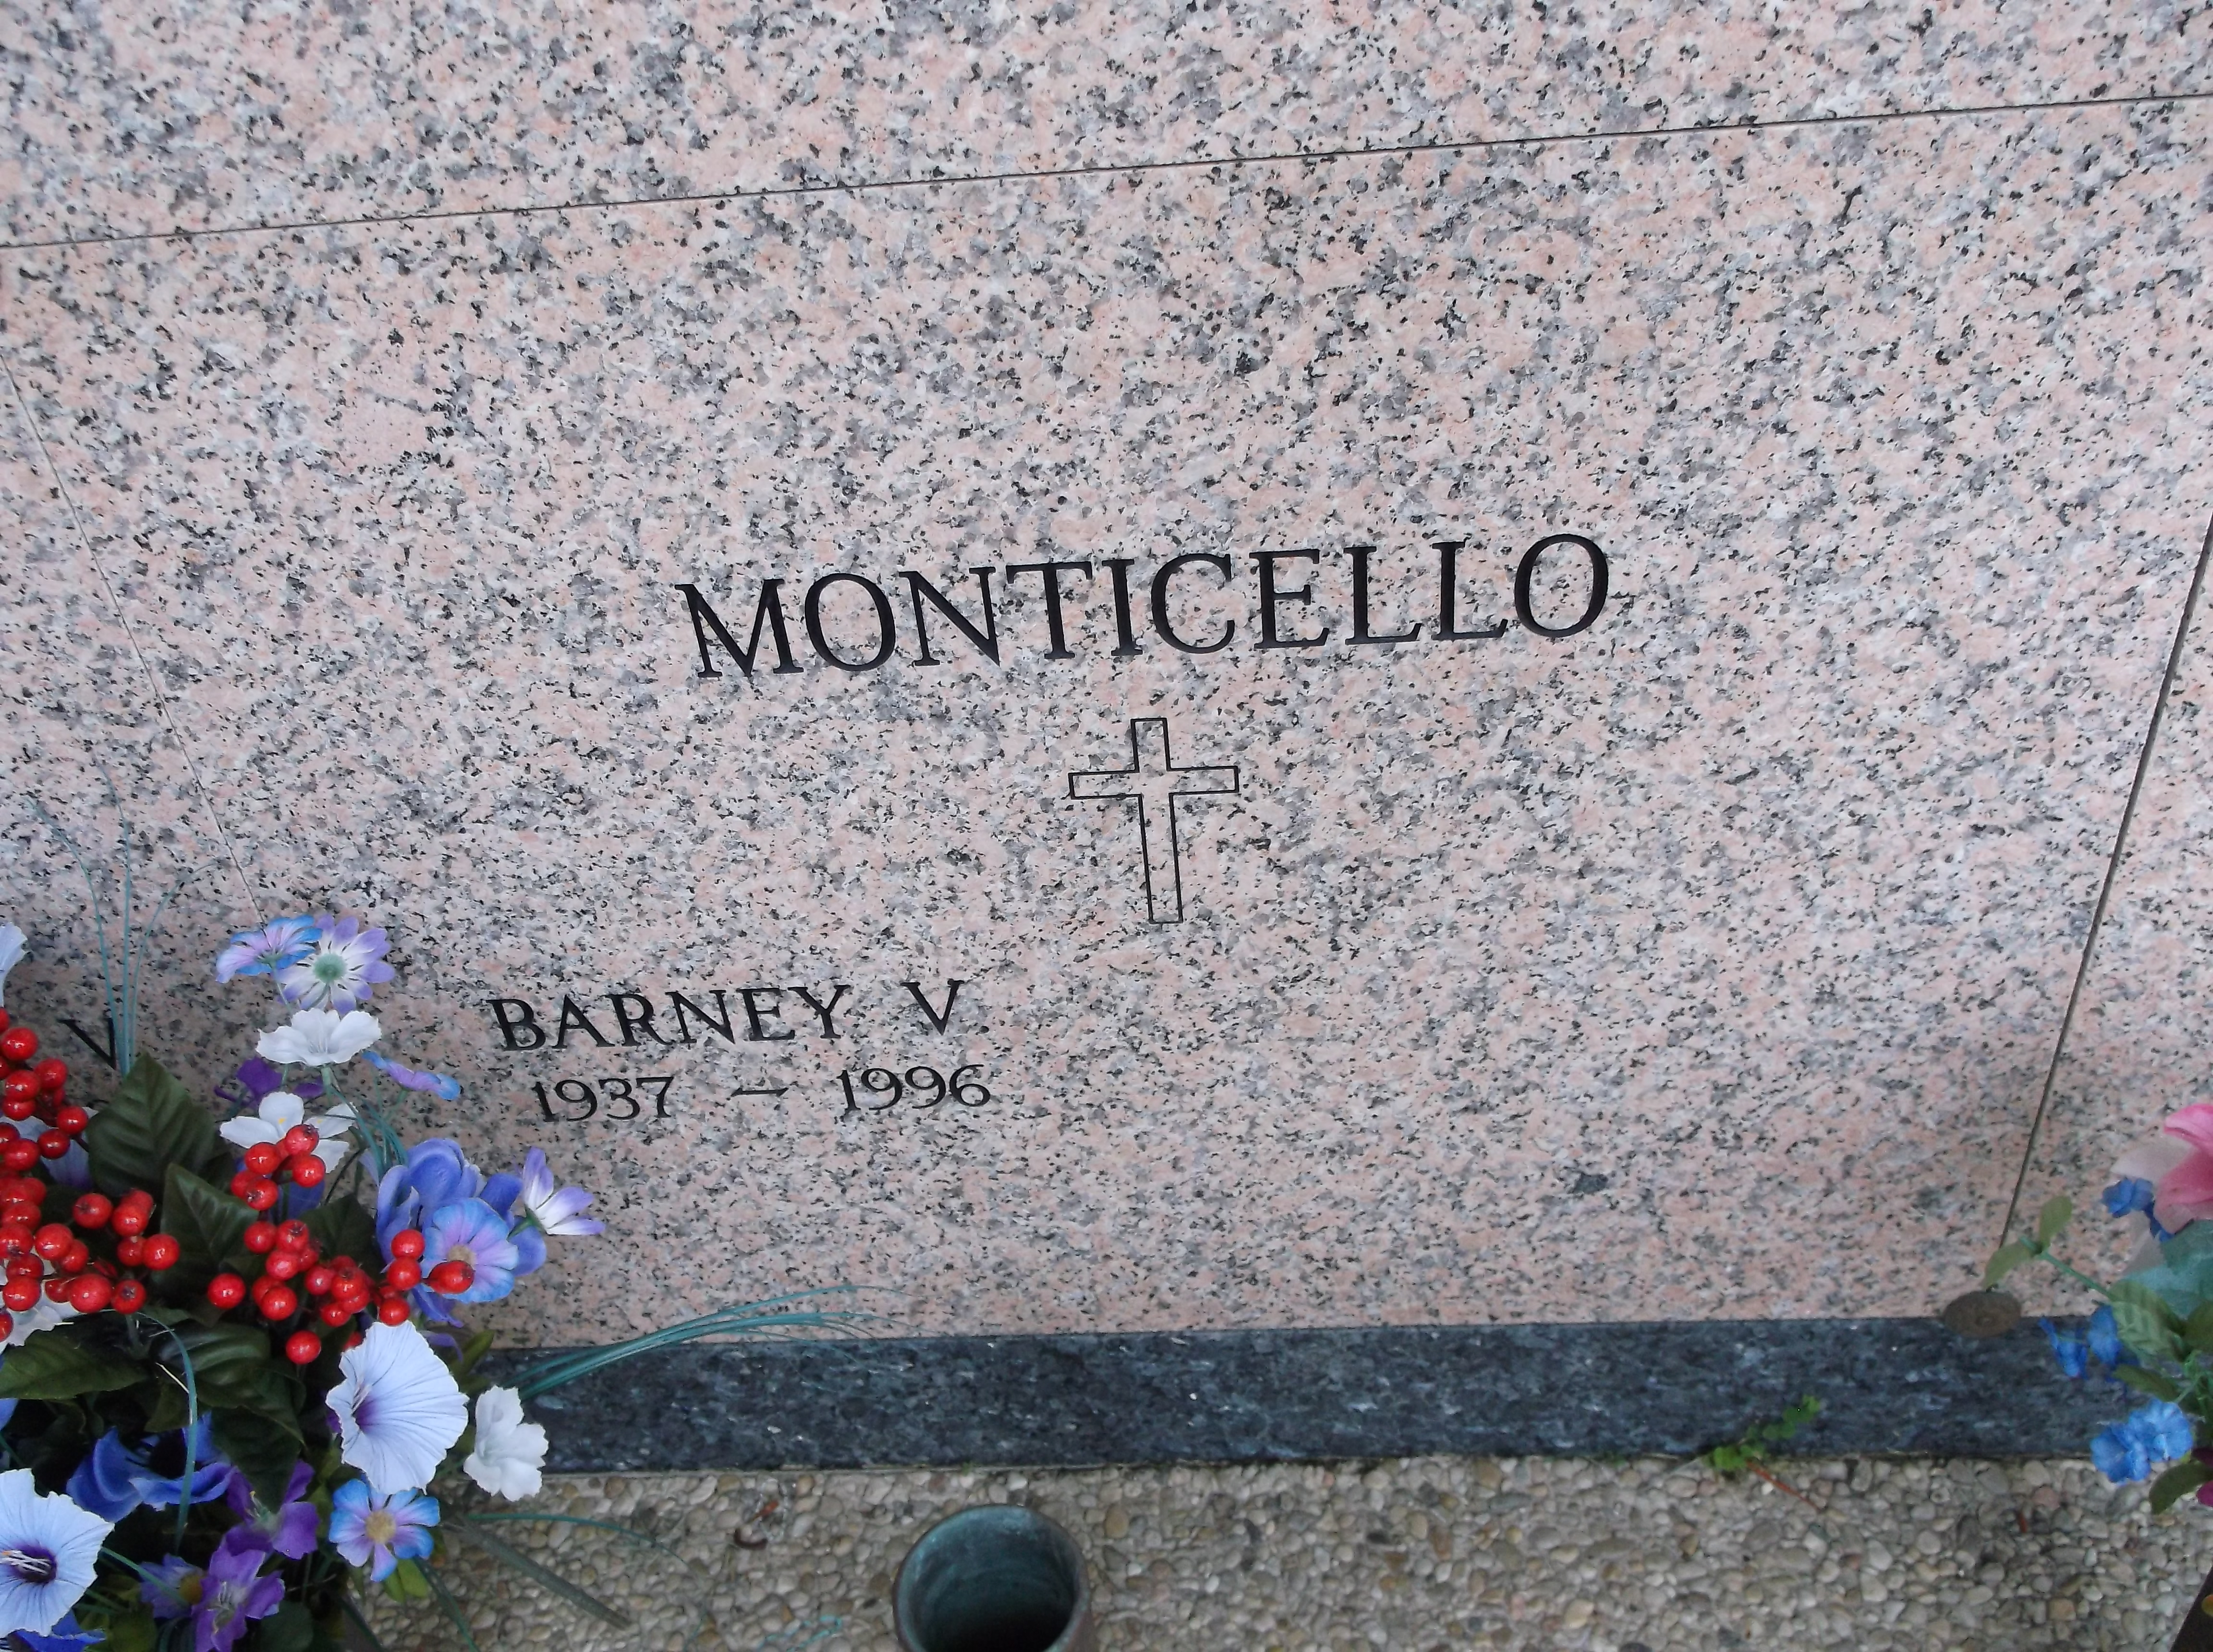 Barney V Monticello